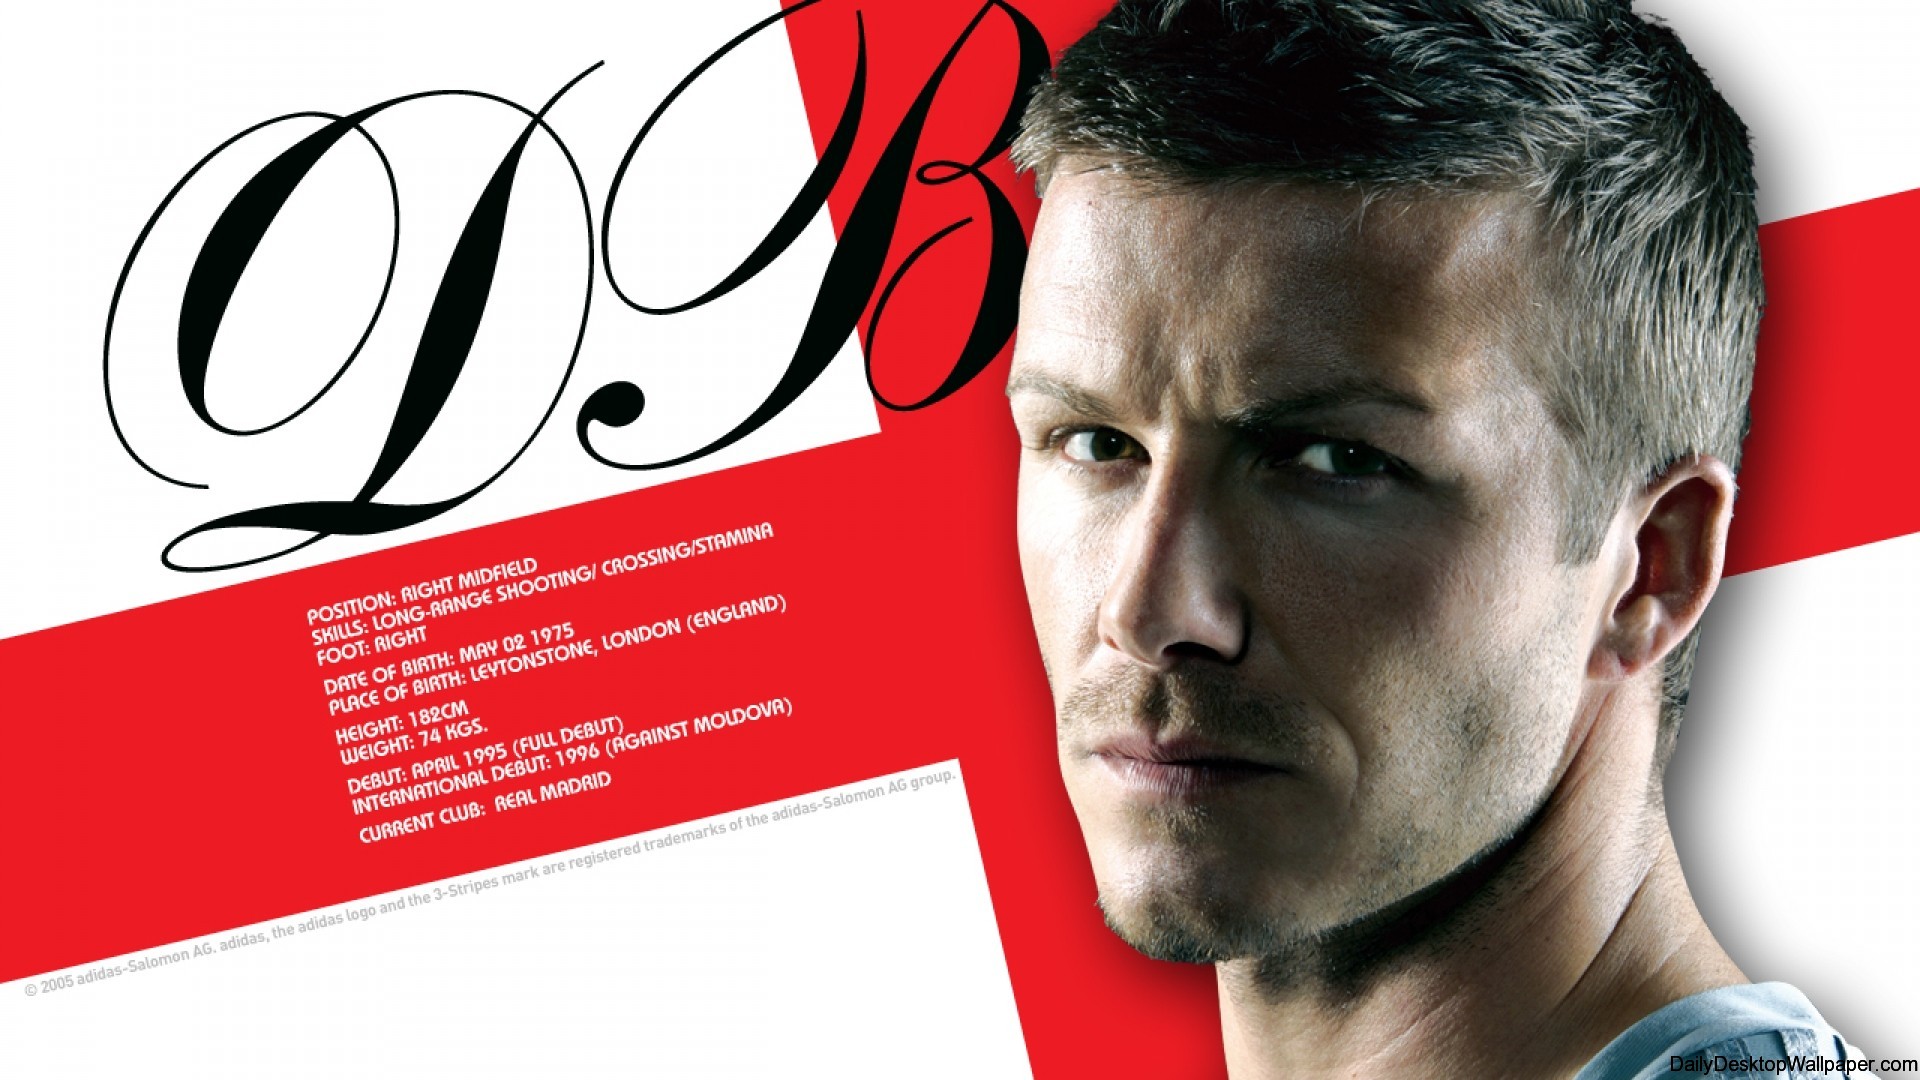 David Beckham Soccer Wallpaper - High Definition, High Resolution HD  Wallpapers : High Definition, High Resolution HD Wallpapers